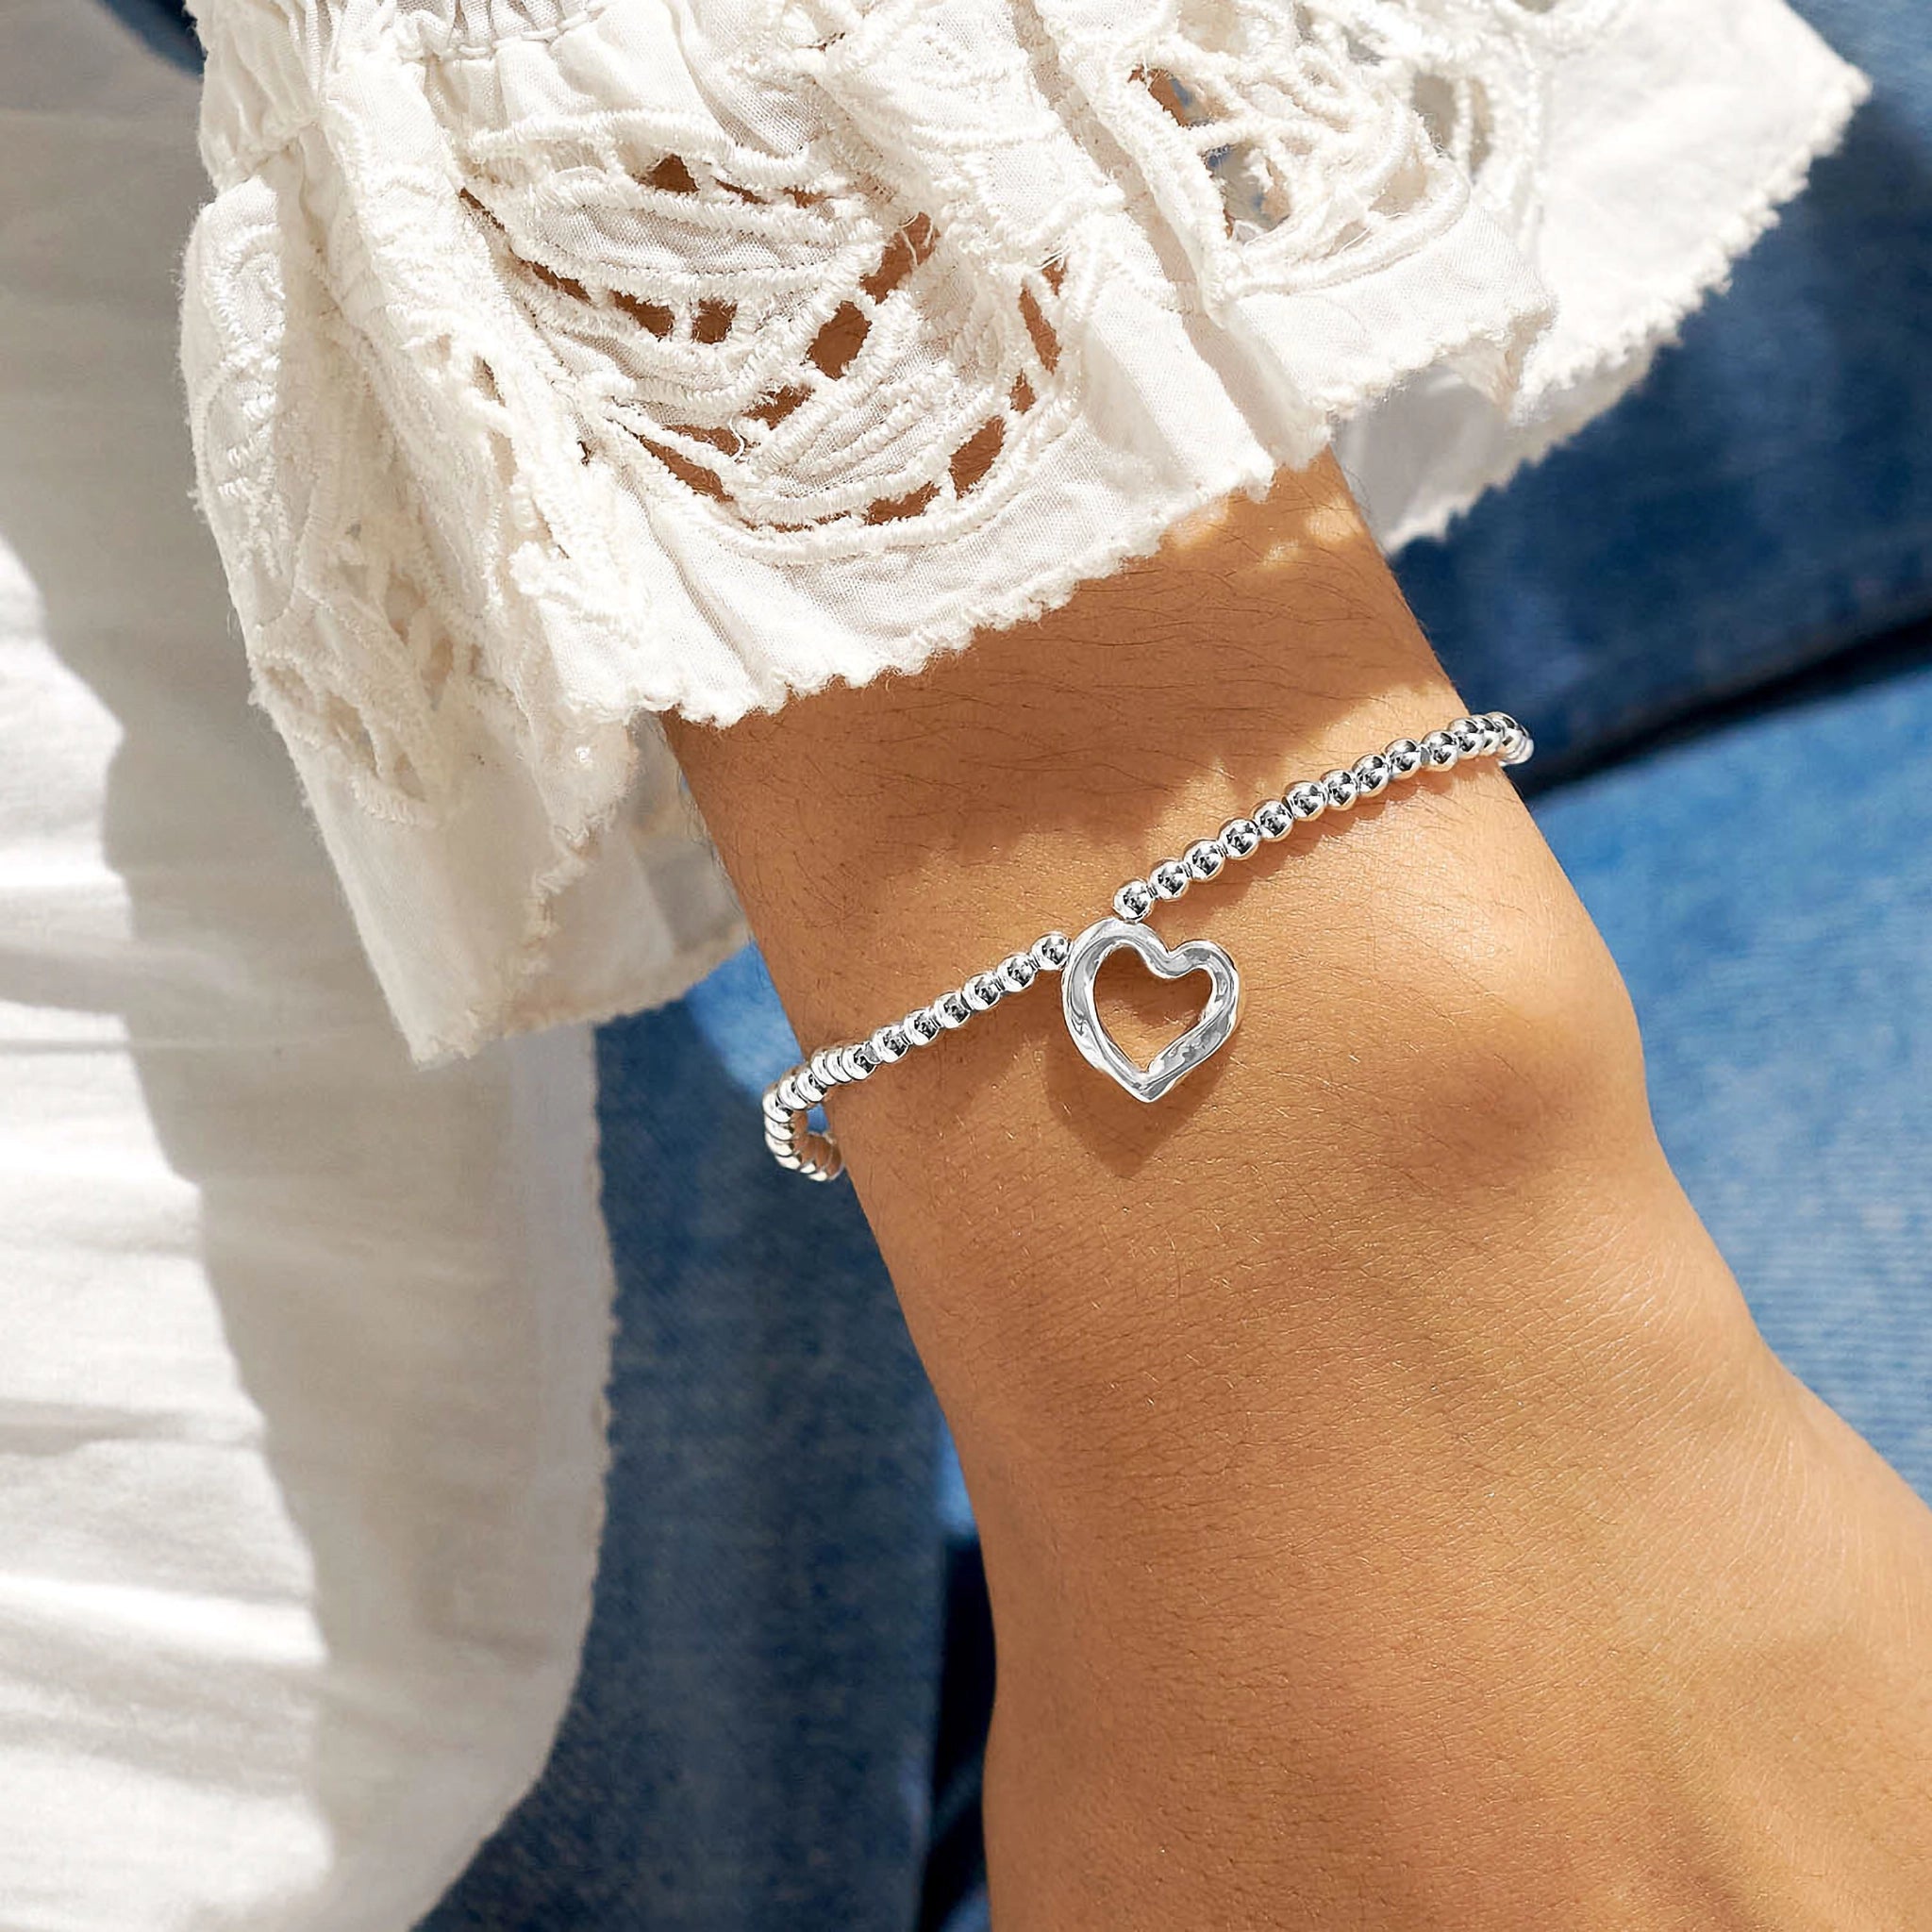 Model wearing a silver beaded bracelet with a silver wavy heart